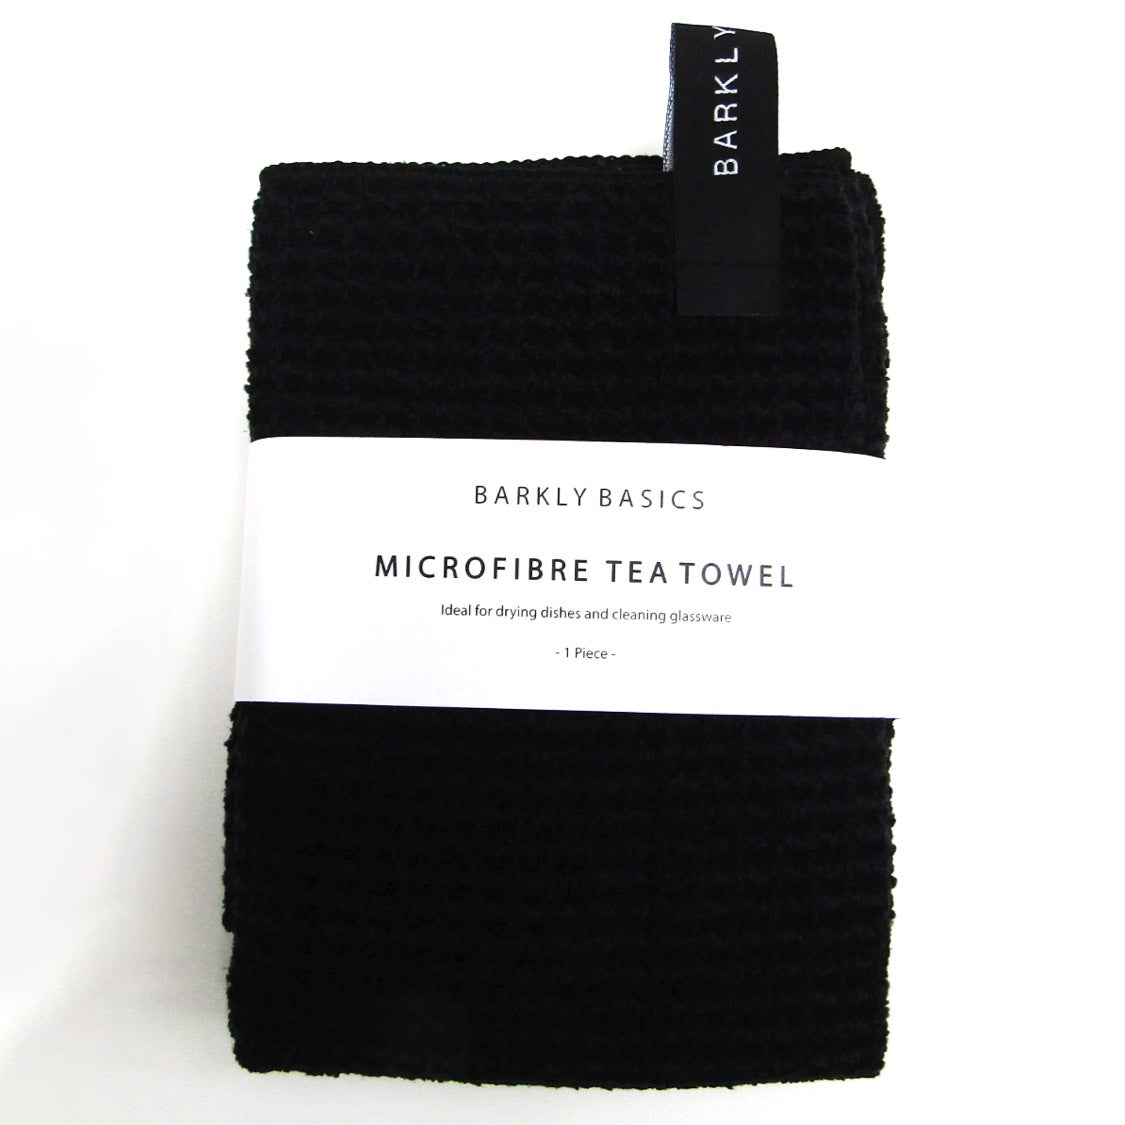 Barkly Basics Microfibre Tea Towel